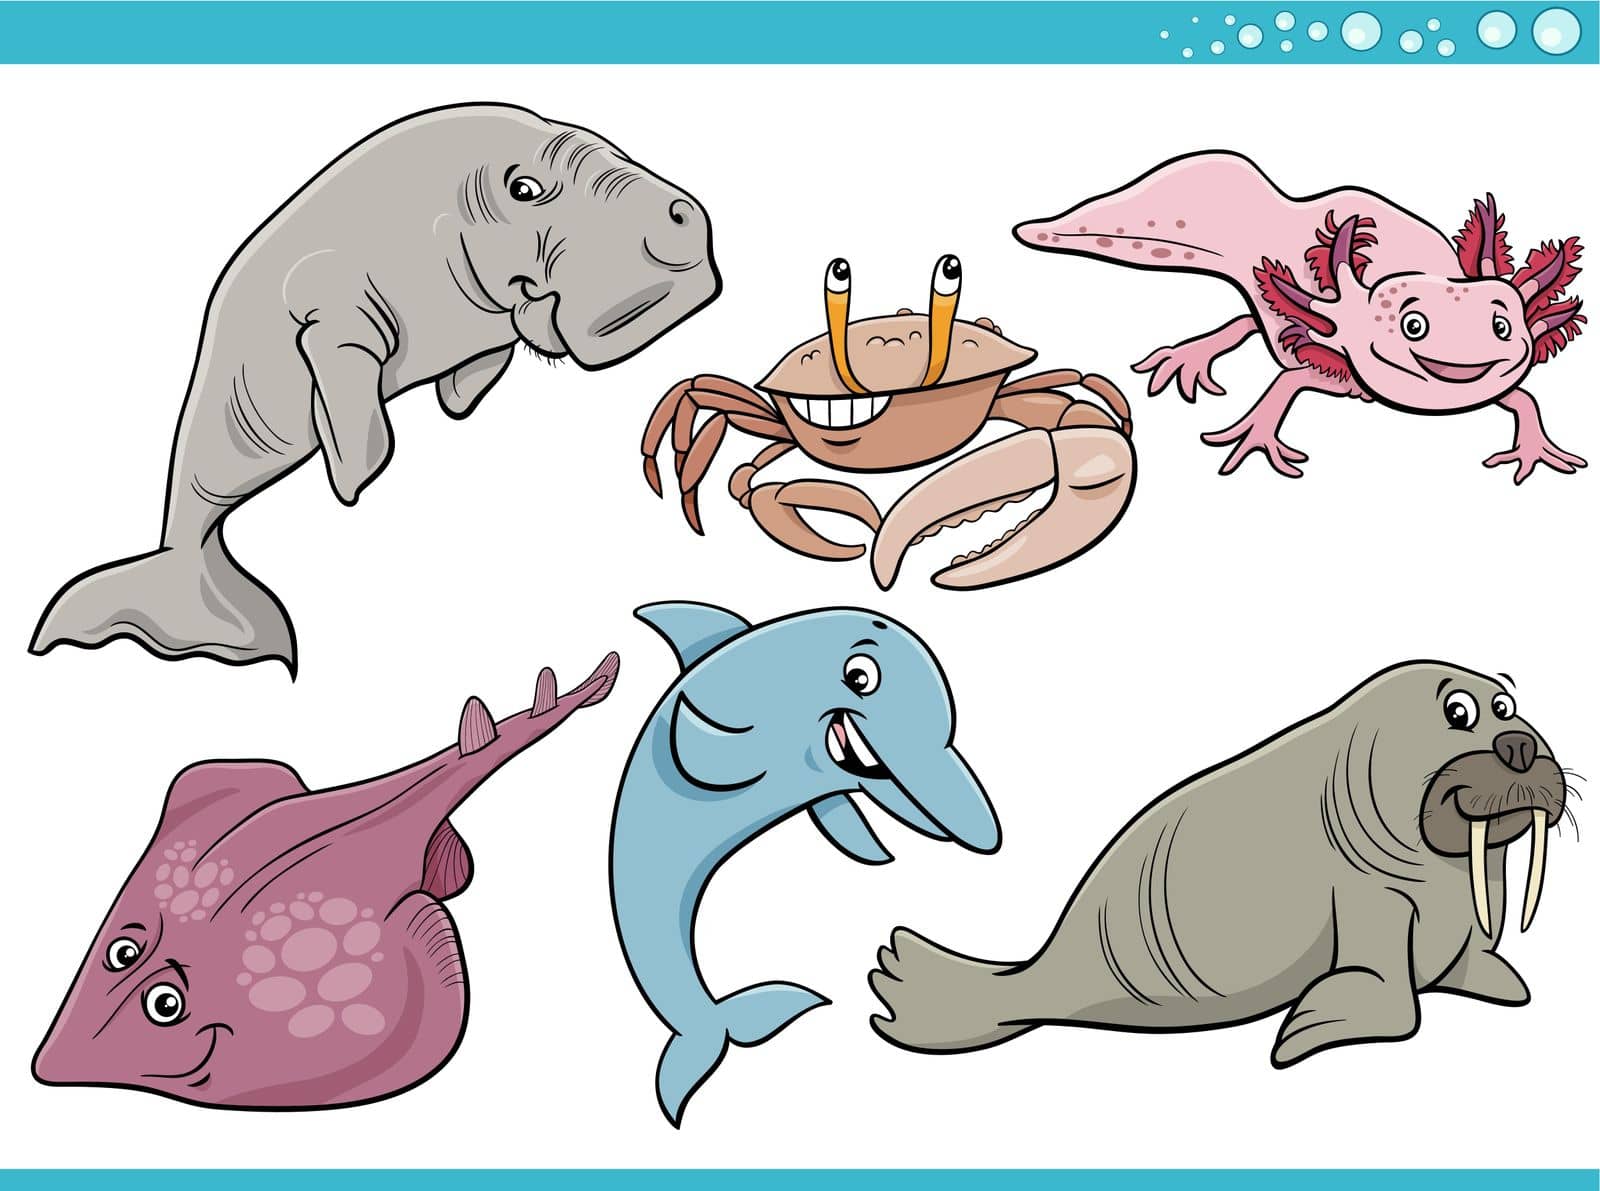 Cartoon Illustration of sea life or marine animal characters set